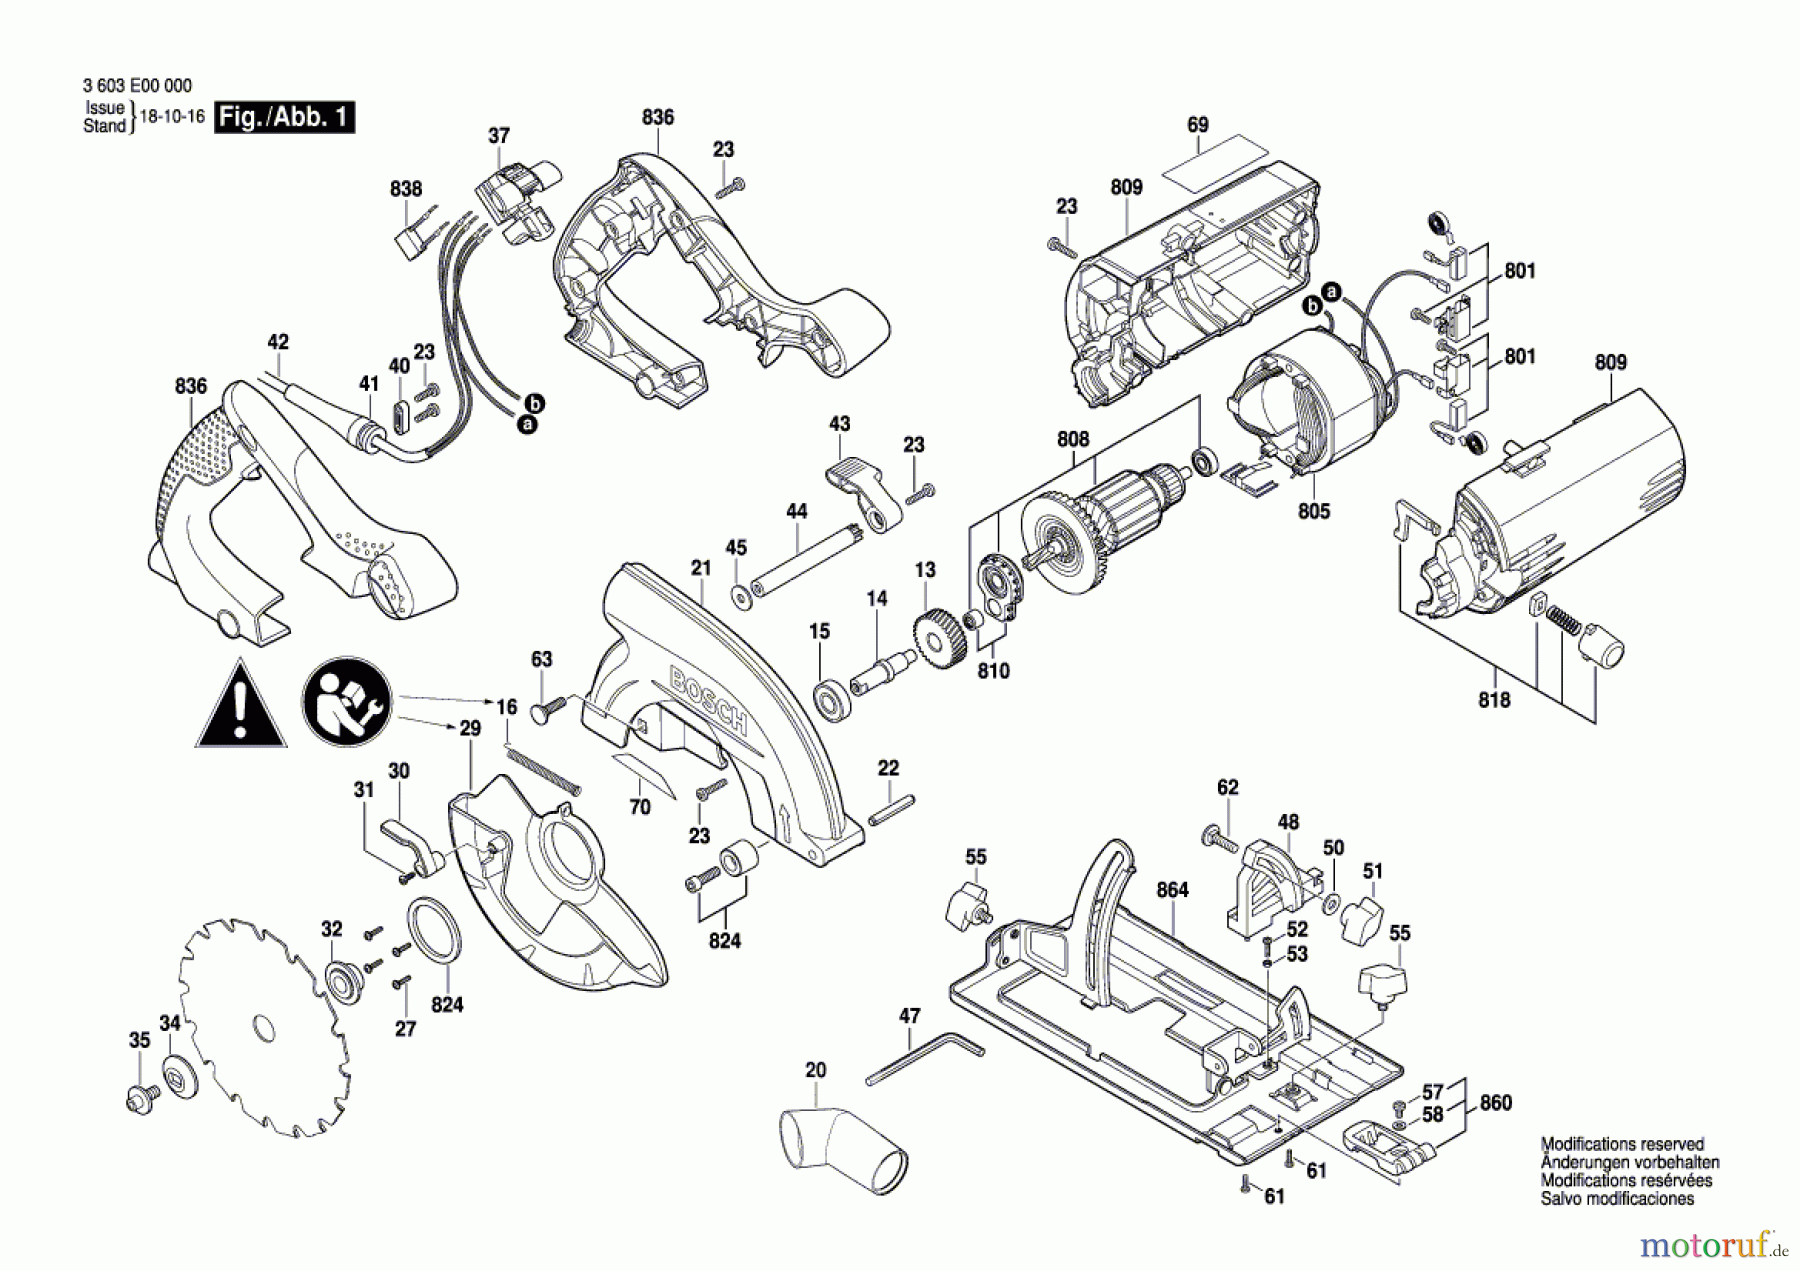  Bosch Werkzeug Handkreissäge PKS 55 Seite 1